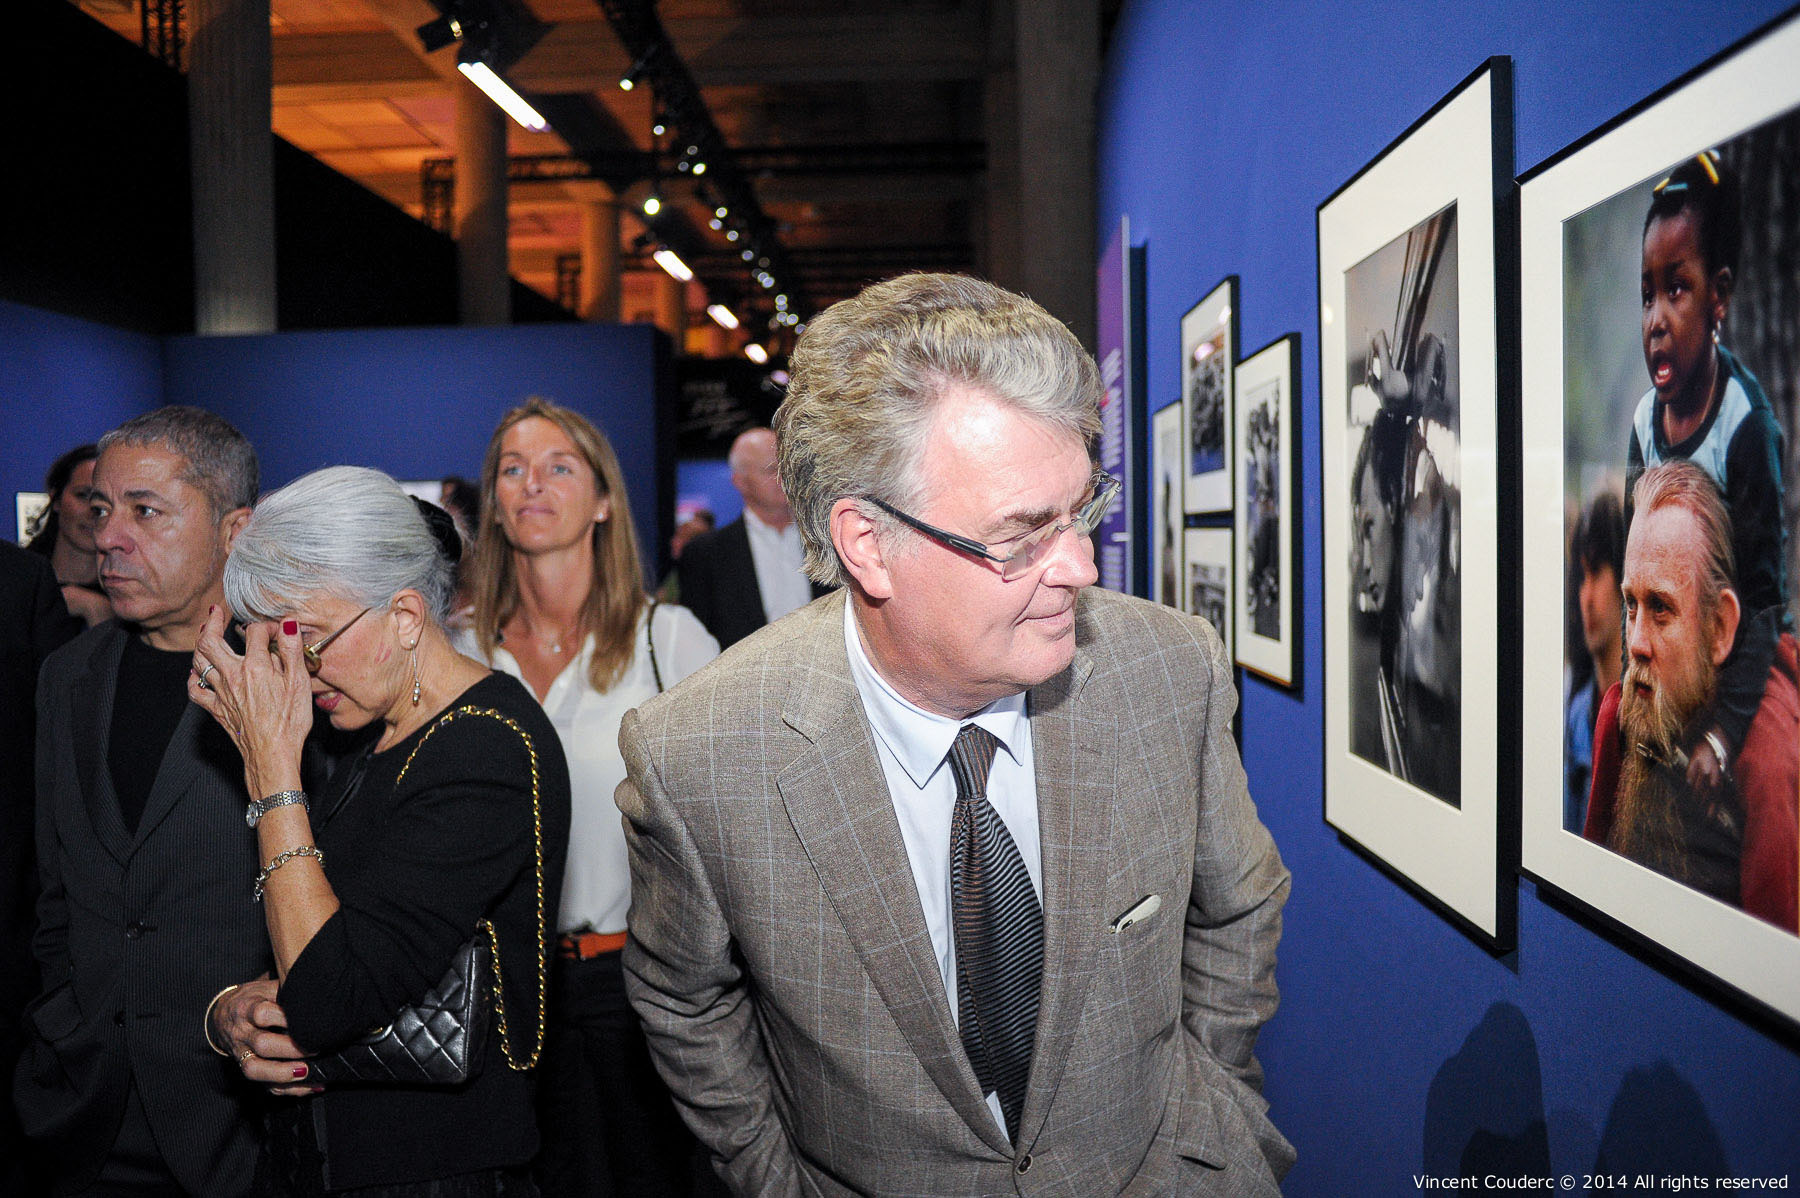  Jean-Paul Delevoye, président du CESE (2010-2015)  Exposition sur le travail du photographe Henri Dauman Palais d'Iéna,&nbsp;Paris, 2014.   www.manhattan-darkroom.com  